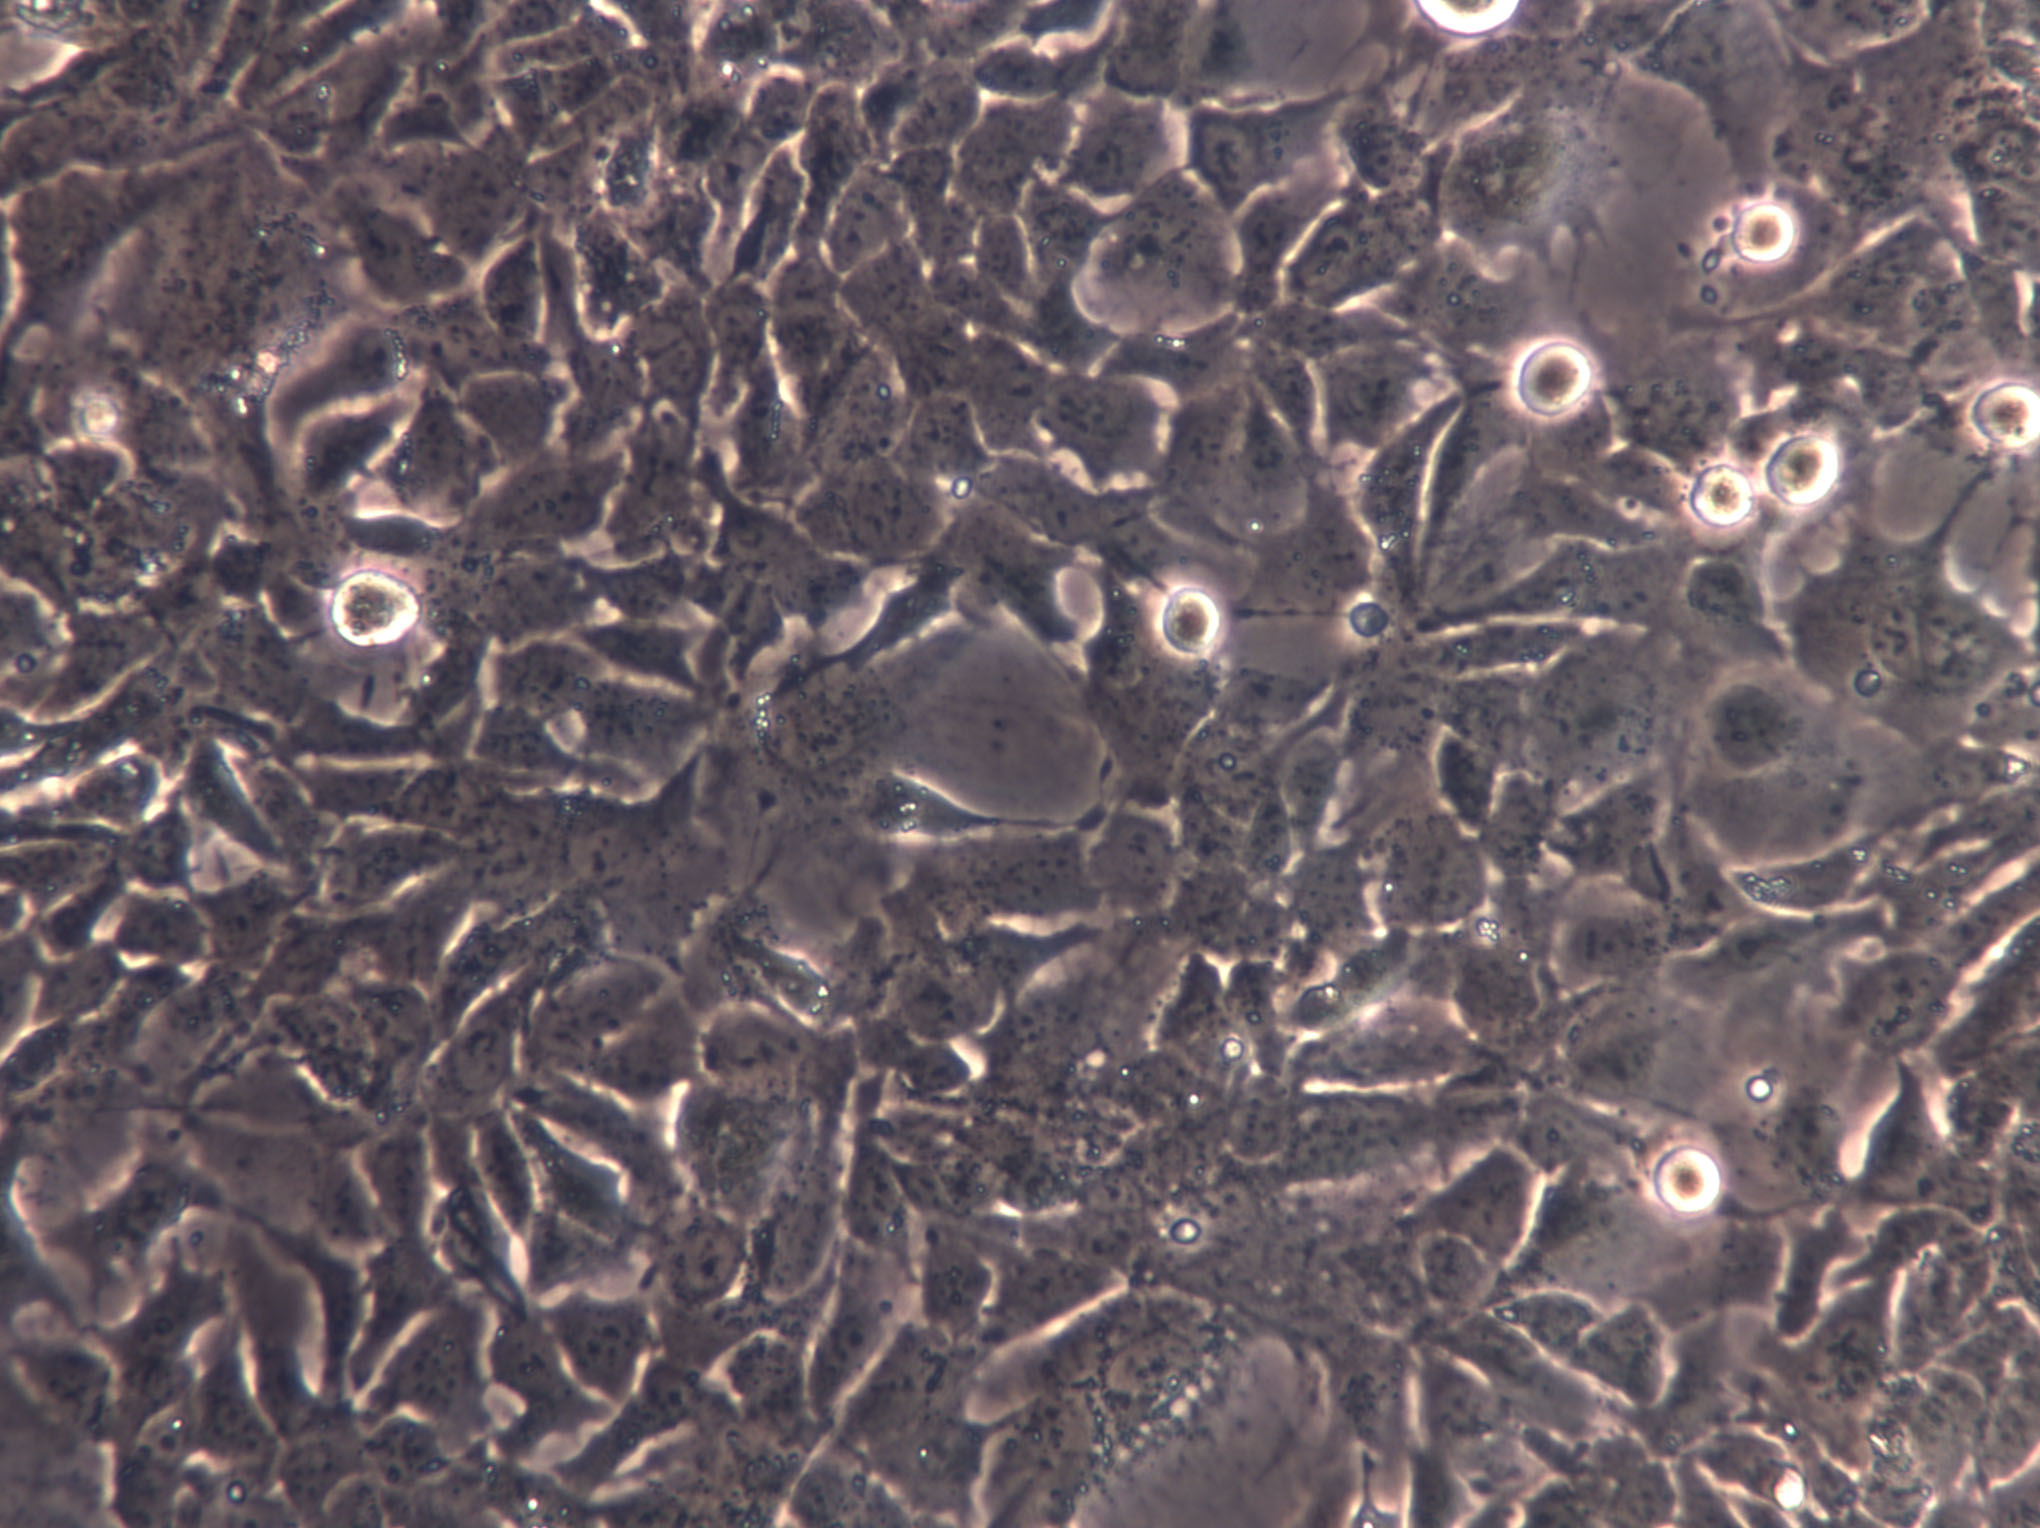 SNU-251 Cells(赠送Str鉴定报告)|人卵巢内膜癌细胞,SNU-251 Cells